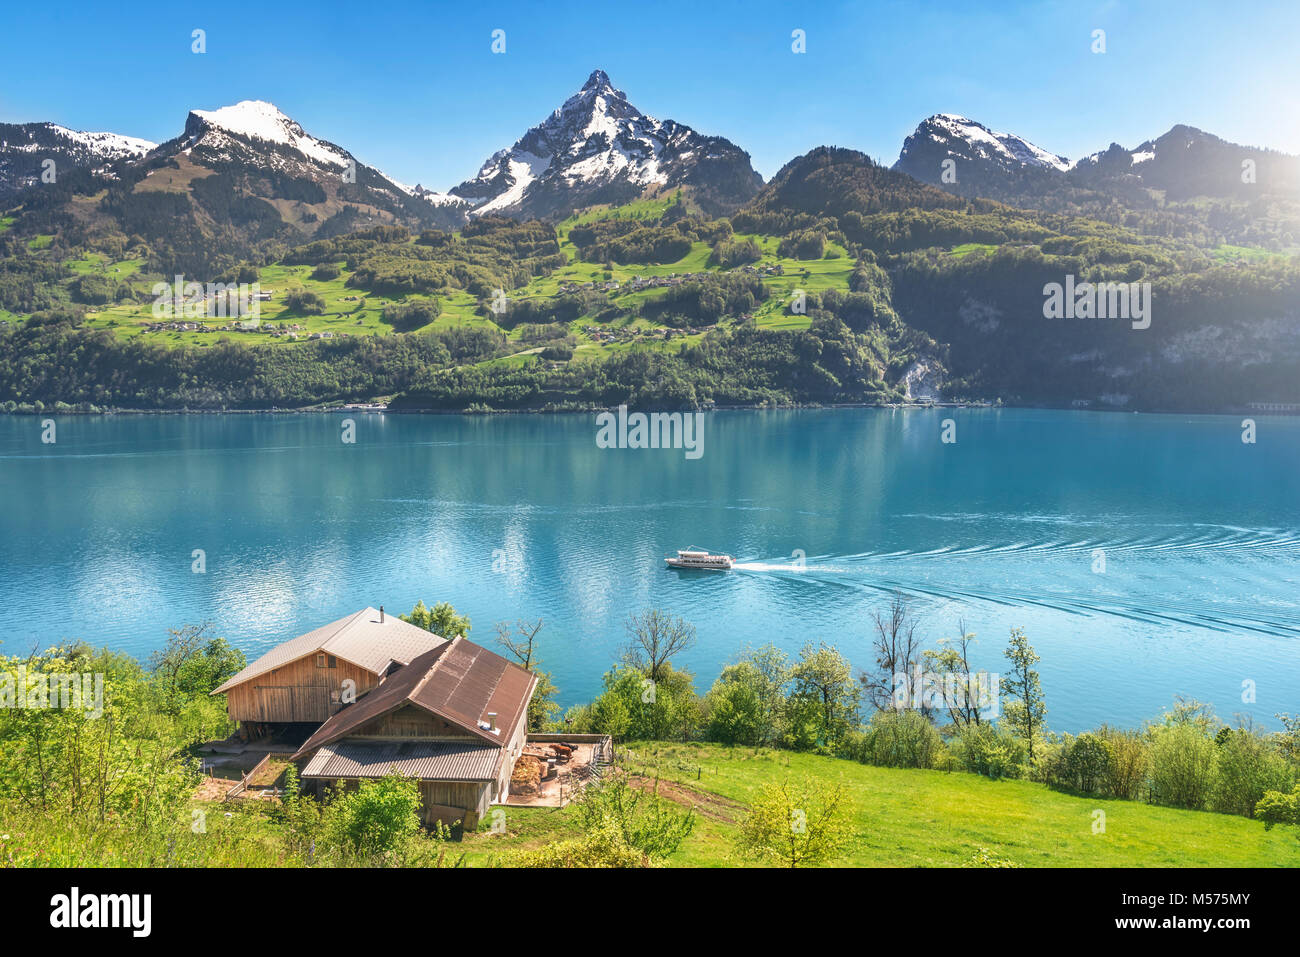 Erstaunlich Frühling Landschaft mit den Alpen Berge, den Walensee mit einem Boot schwimmend auf, und eine alte Scheune auf einer grünen Wiese, an einem sonnigen Tag. Stockfoto